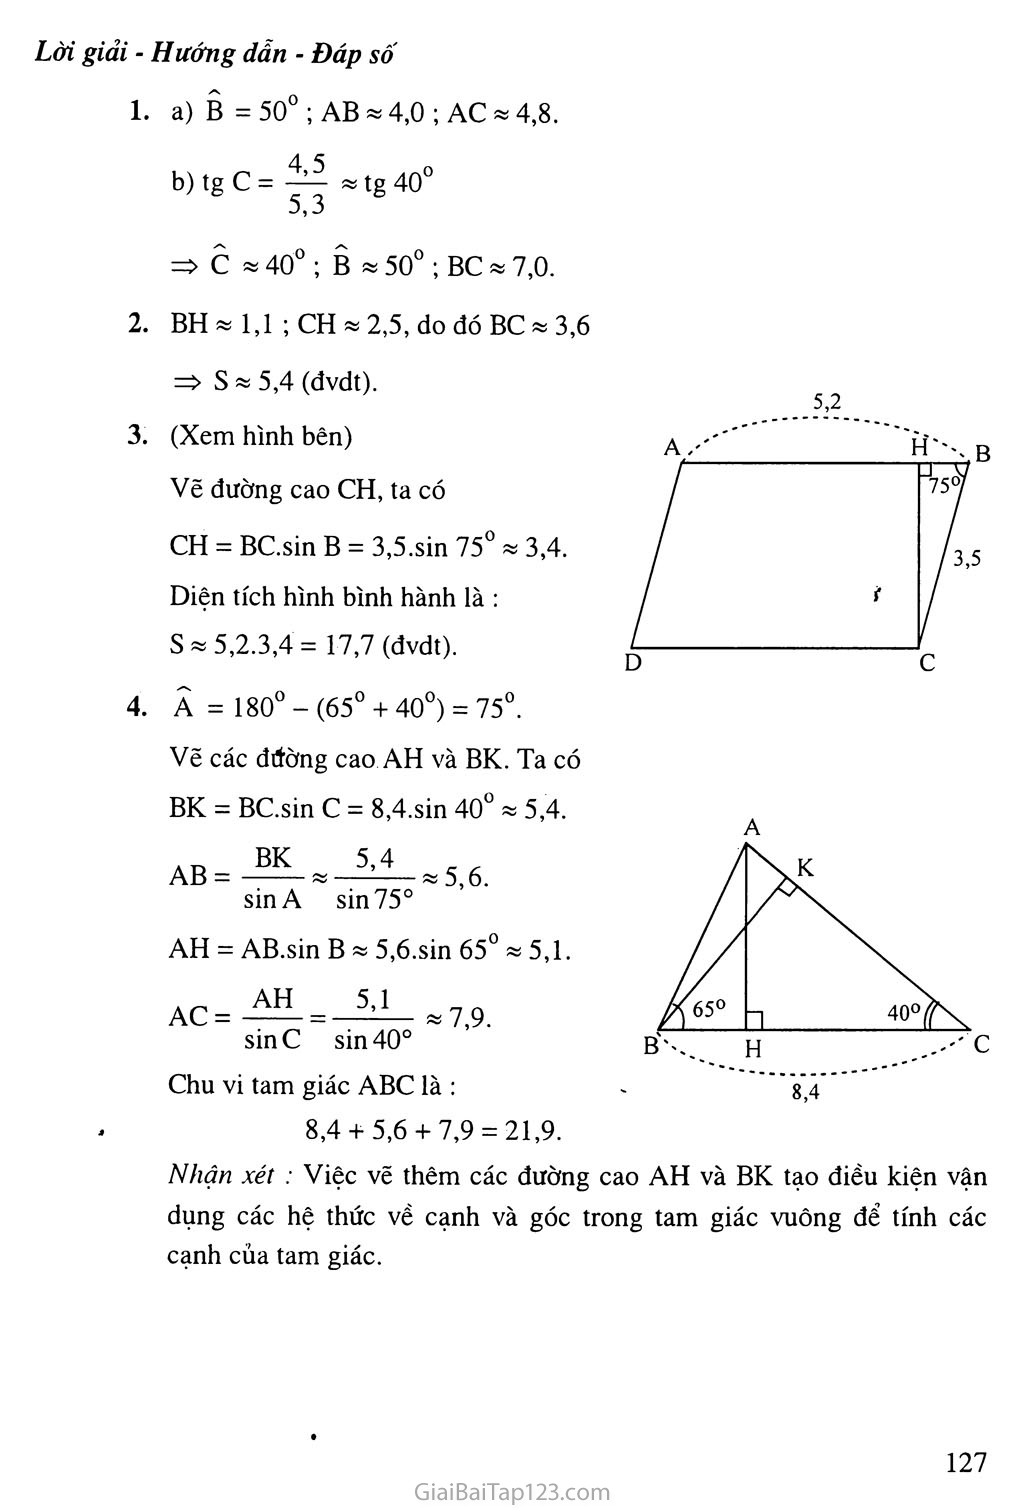 Bài 4. Một số hệ thức về cạnh và góc trong tam giác vuông trang 6